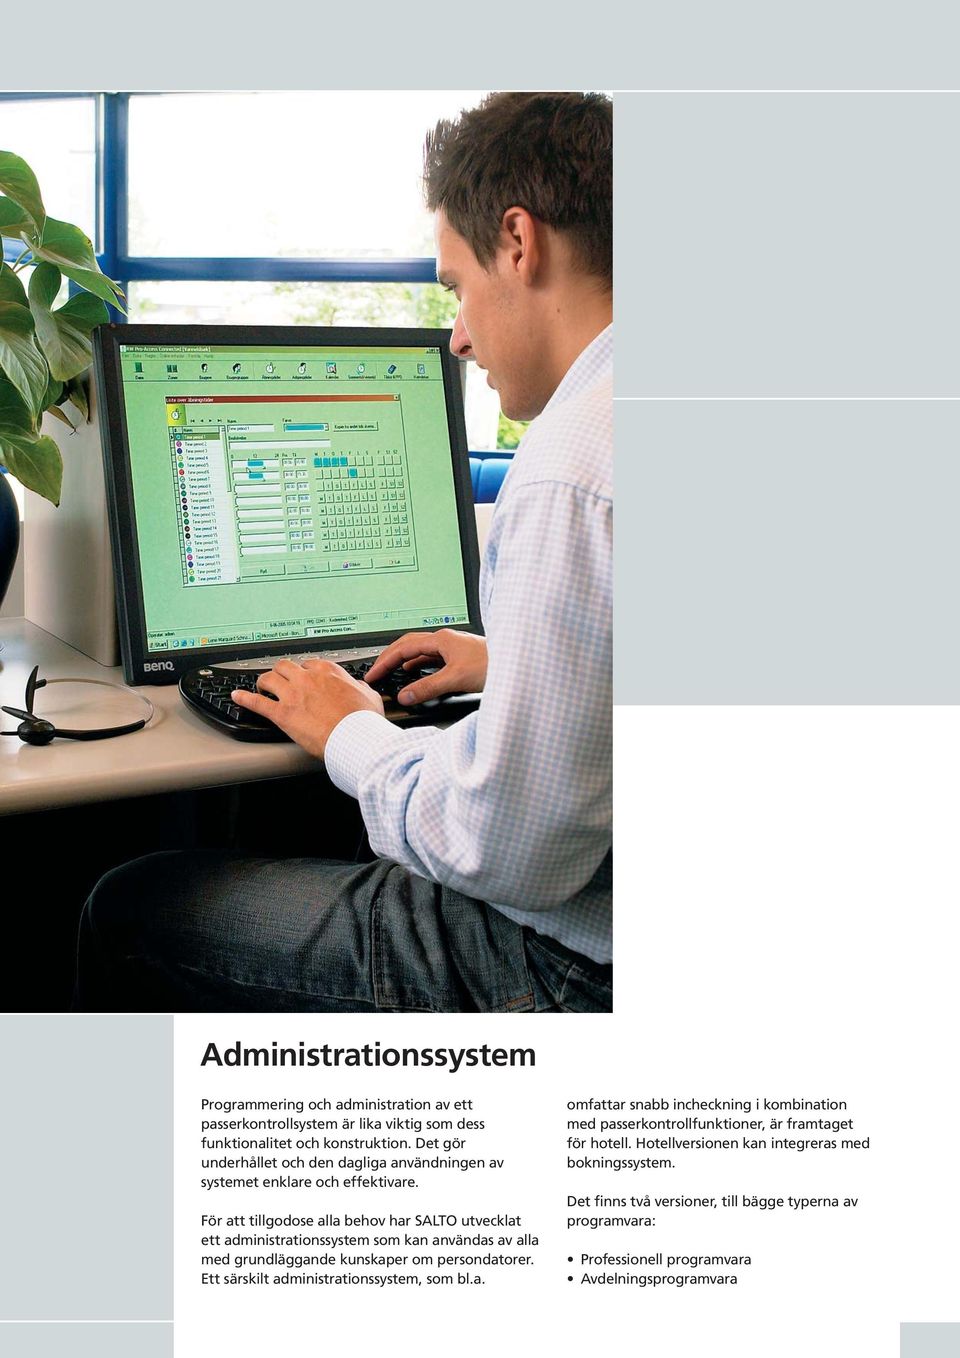 För att tillgodose alla behov har SALTO utvecklat ett administrationssystem som kan användas av alla med grundläggande kunskaper om persondatorer.